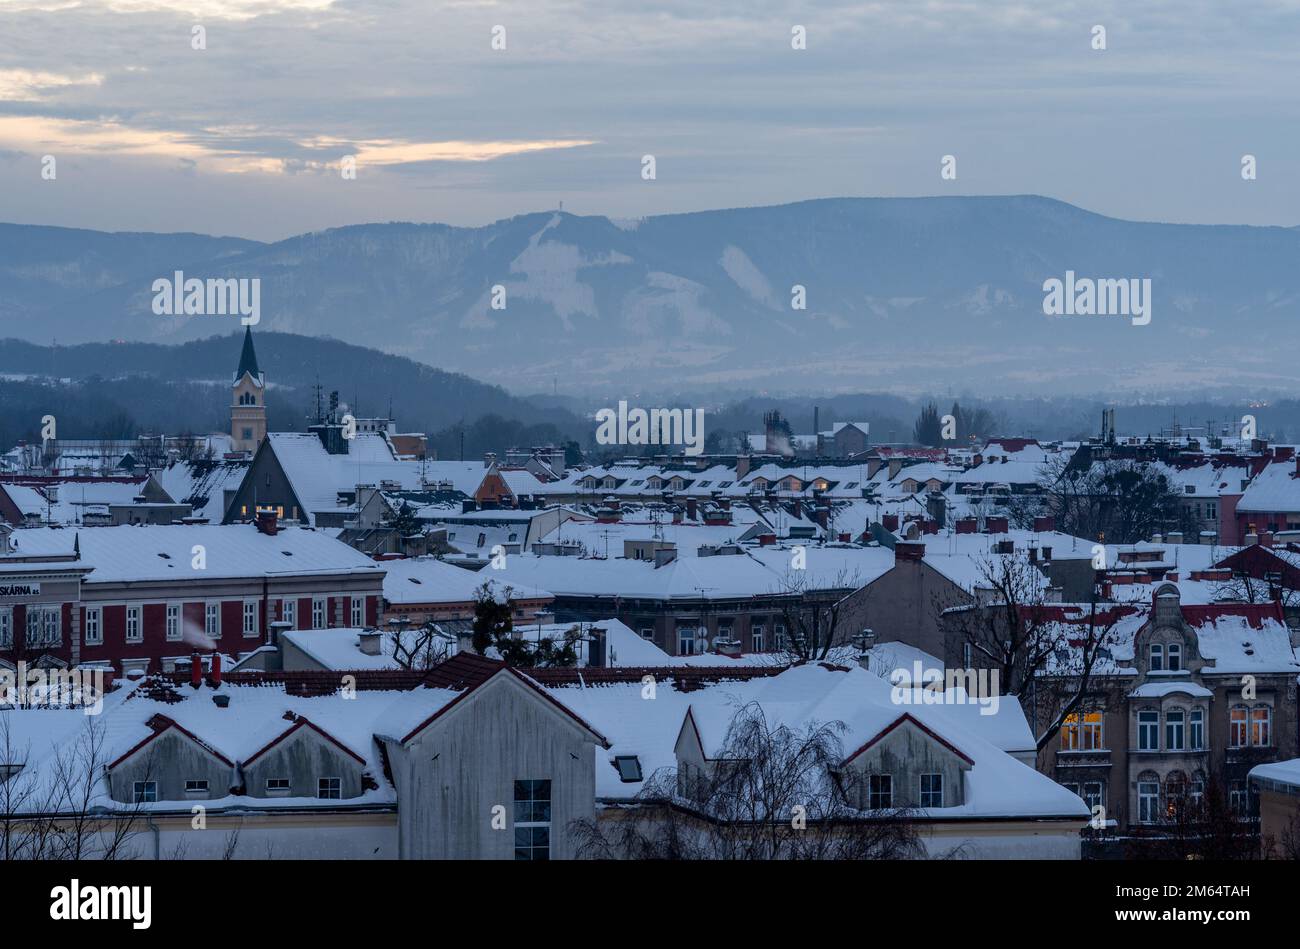 Paesaggio urbano di Cesky Tesin, regione della slesia Morava, Repubblica Ceca, tetti innevati e montagne beskid sullo sfondo Foto Stock